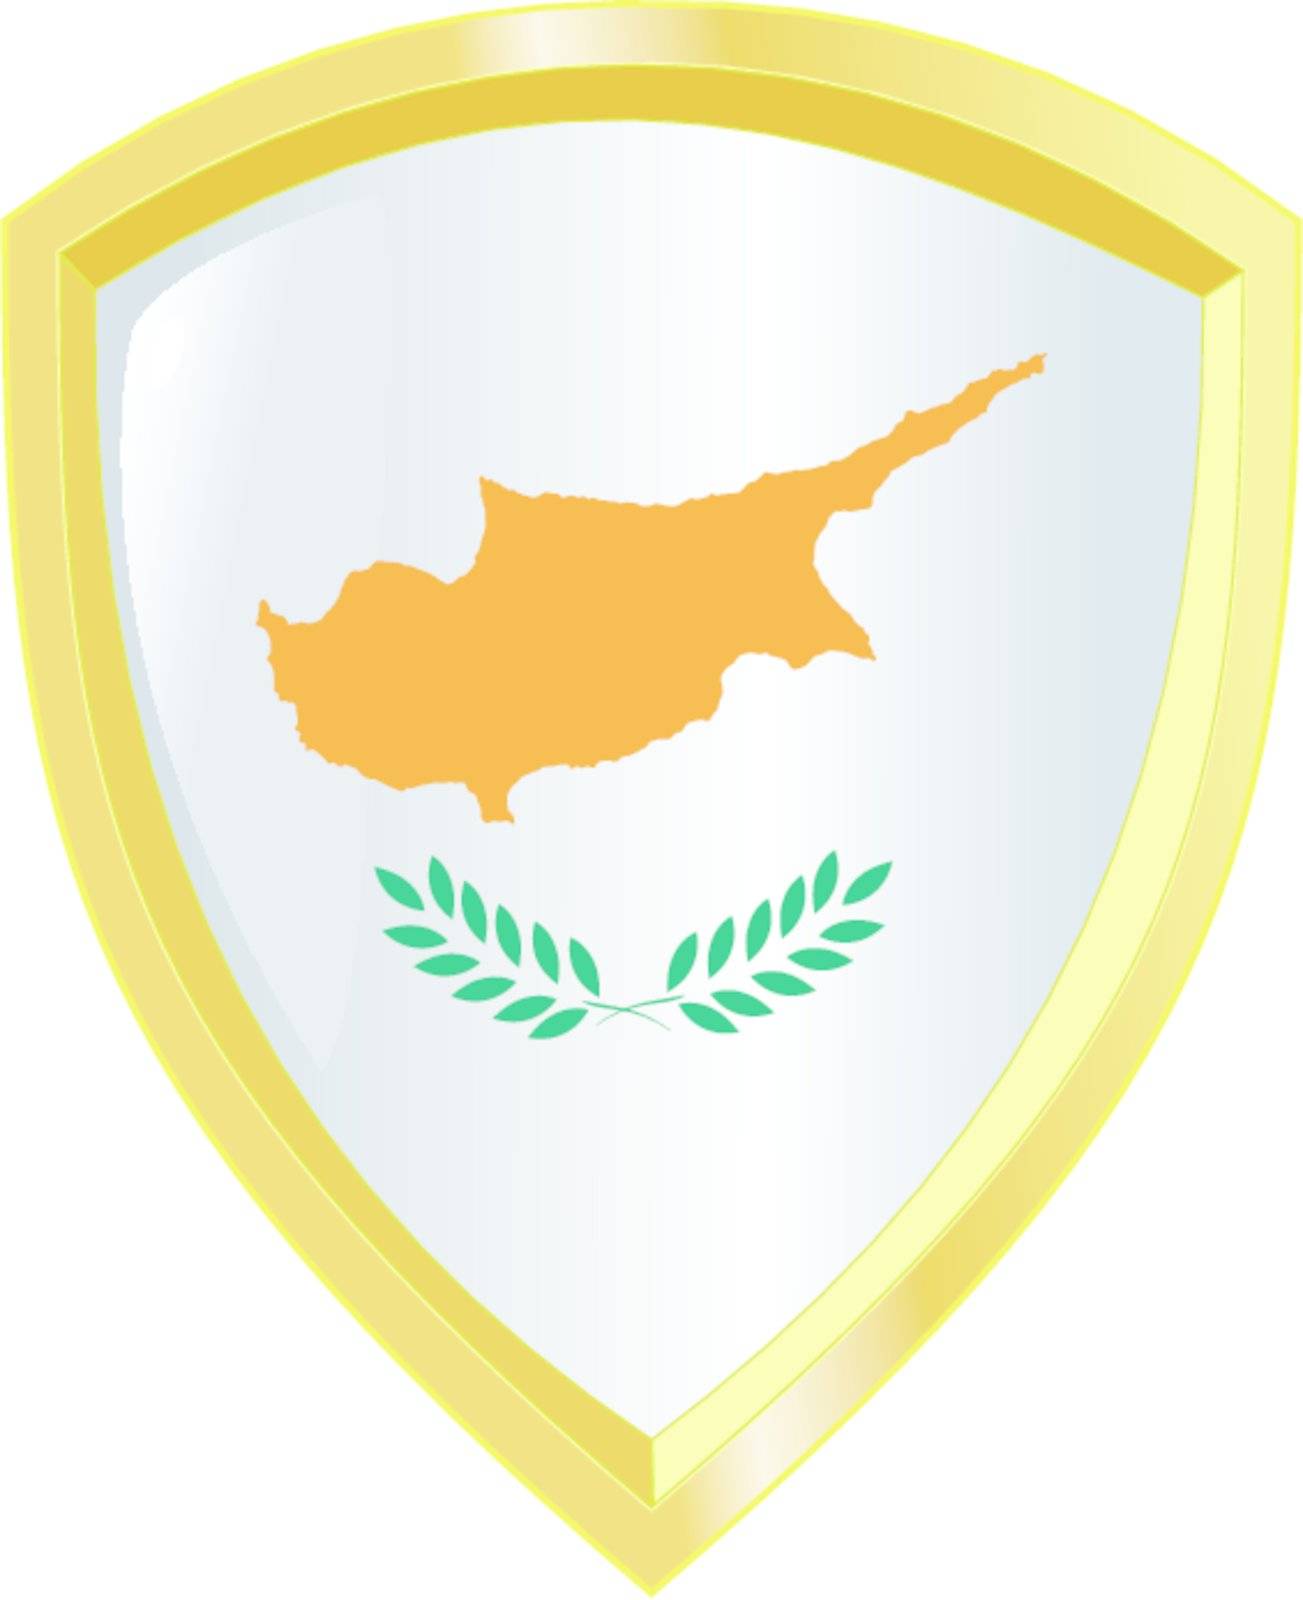 emblem of Cyprus by Perysty